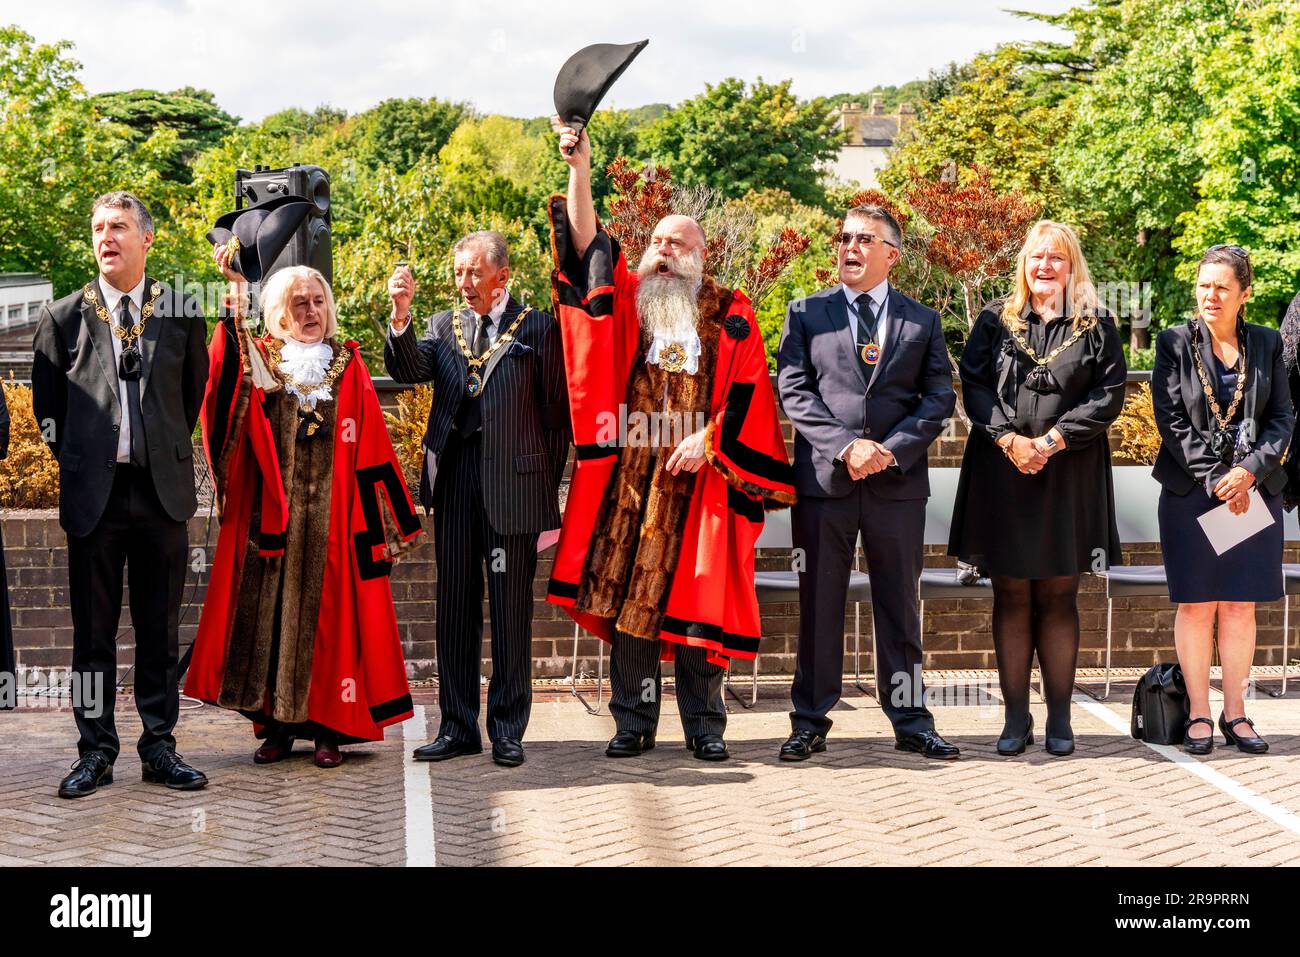 La cérémonie de proclamation du roi Charles III à la suite de la mort de la reine Elizabeth II, Comté de Halll, Lewes, East Sussex, Royaume-Uni. Banque D'Images